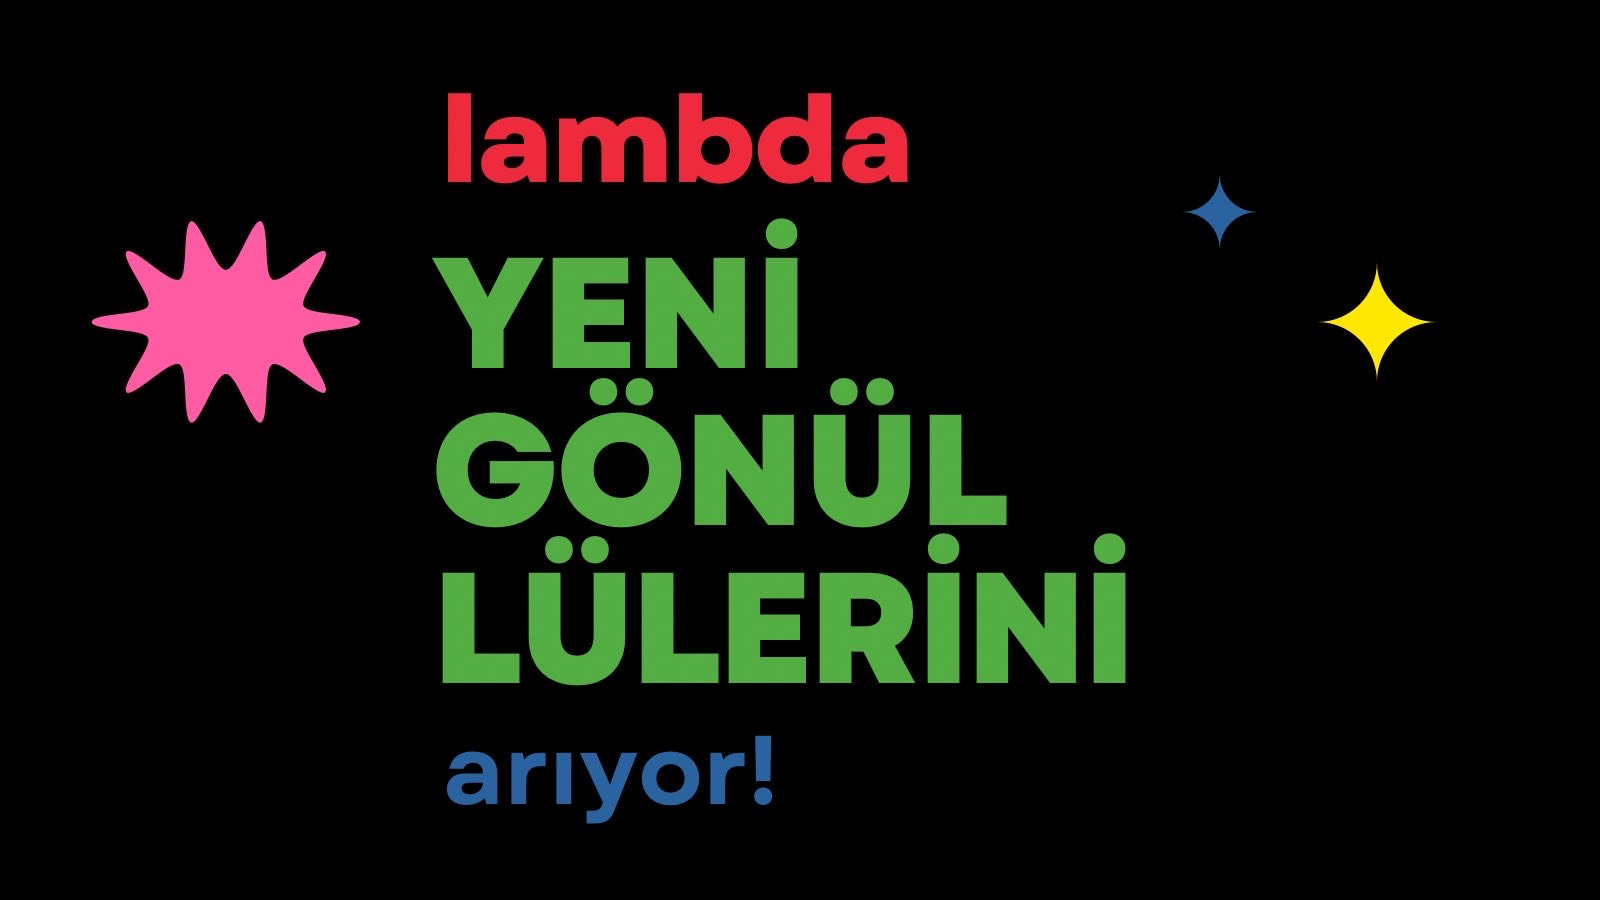 Lambdaistanbul yeni gönüllülerini arıyor Kaos GL - LGBTİ+ Haber Portalı